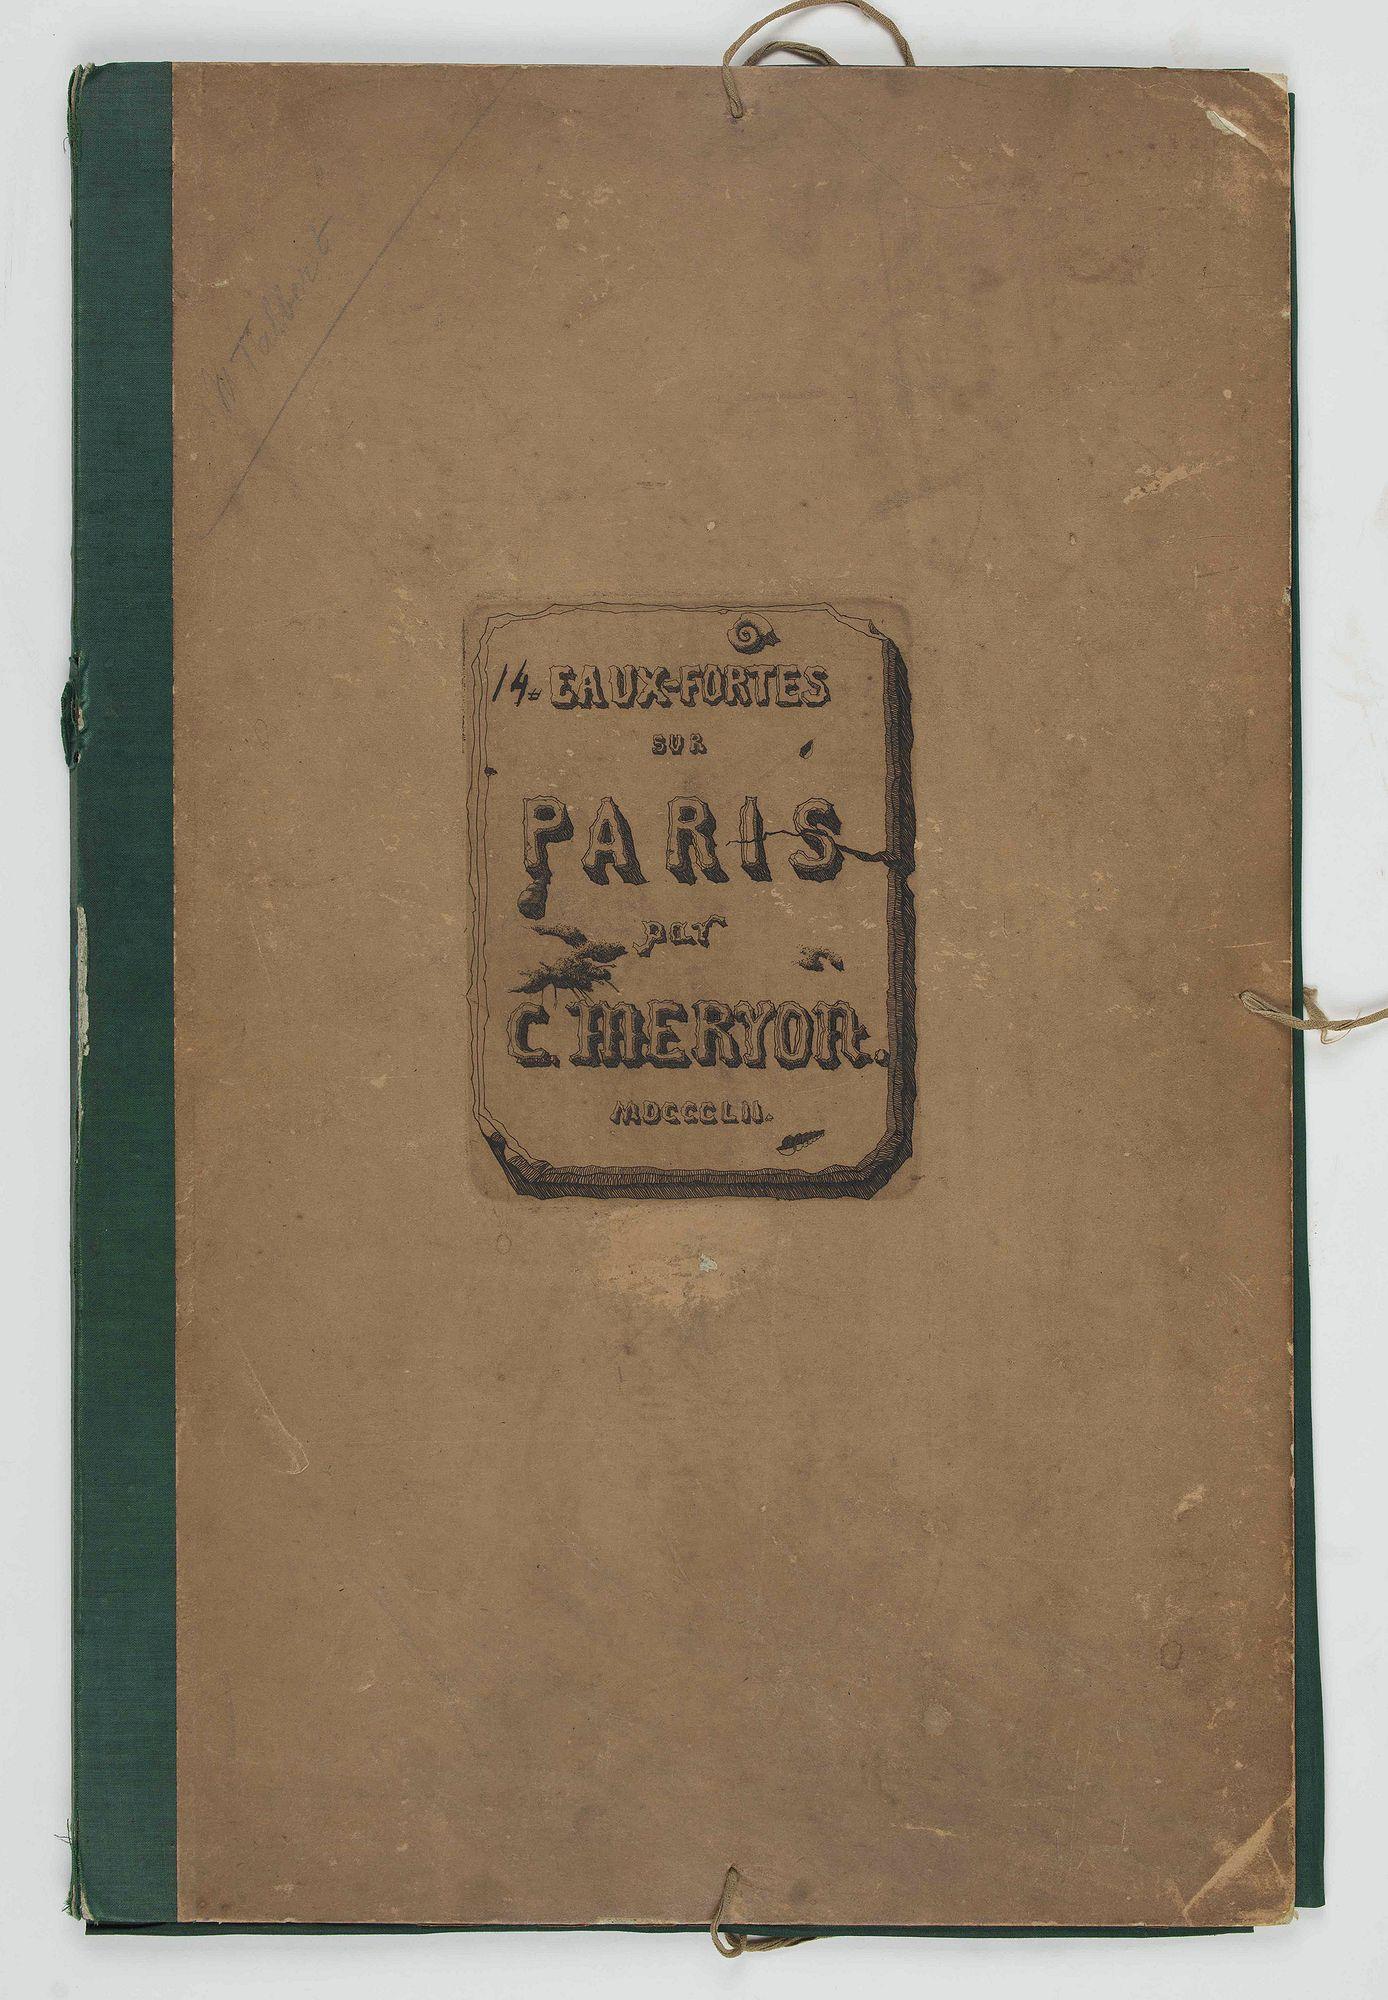 Print Charles Meryon - Eaux-fortes sur Paris, vers 1850-1854